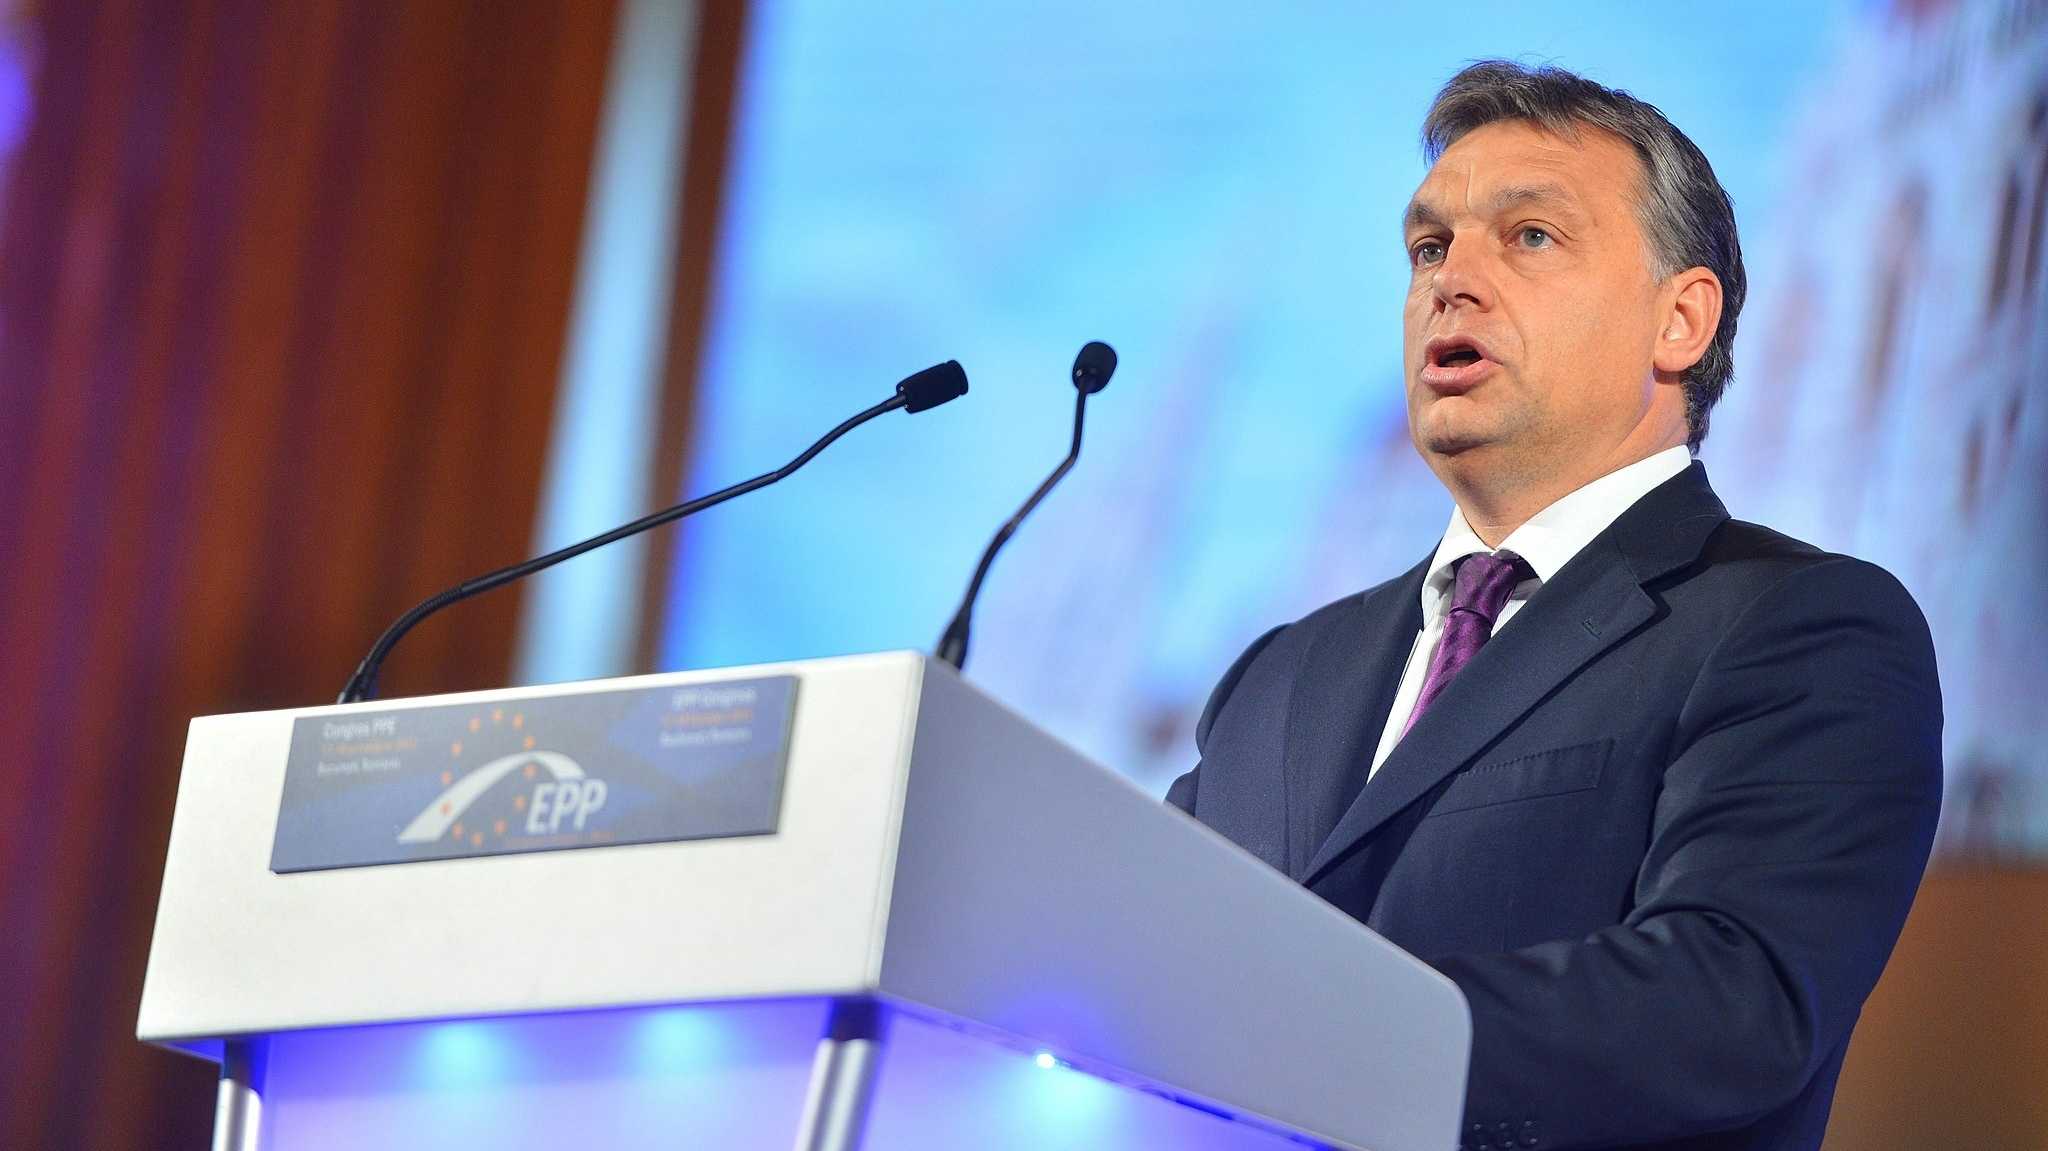 Viktor Orbán hatte früher Freunde in der EU. Heute wird er massiv unter Druck gesetzt.